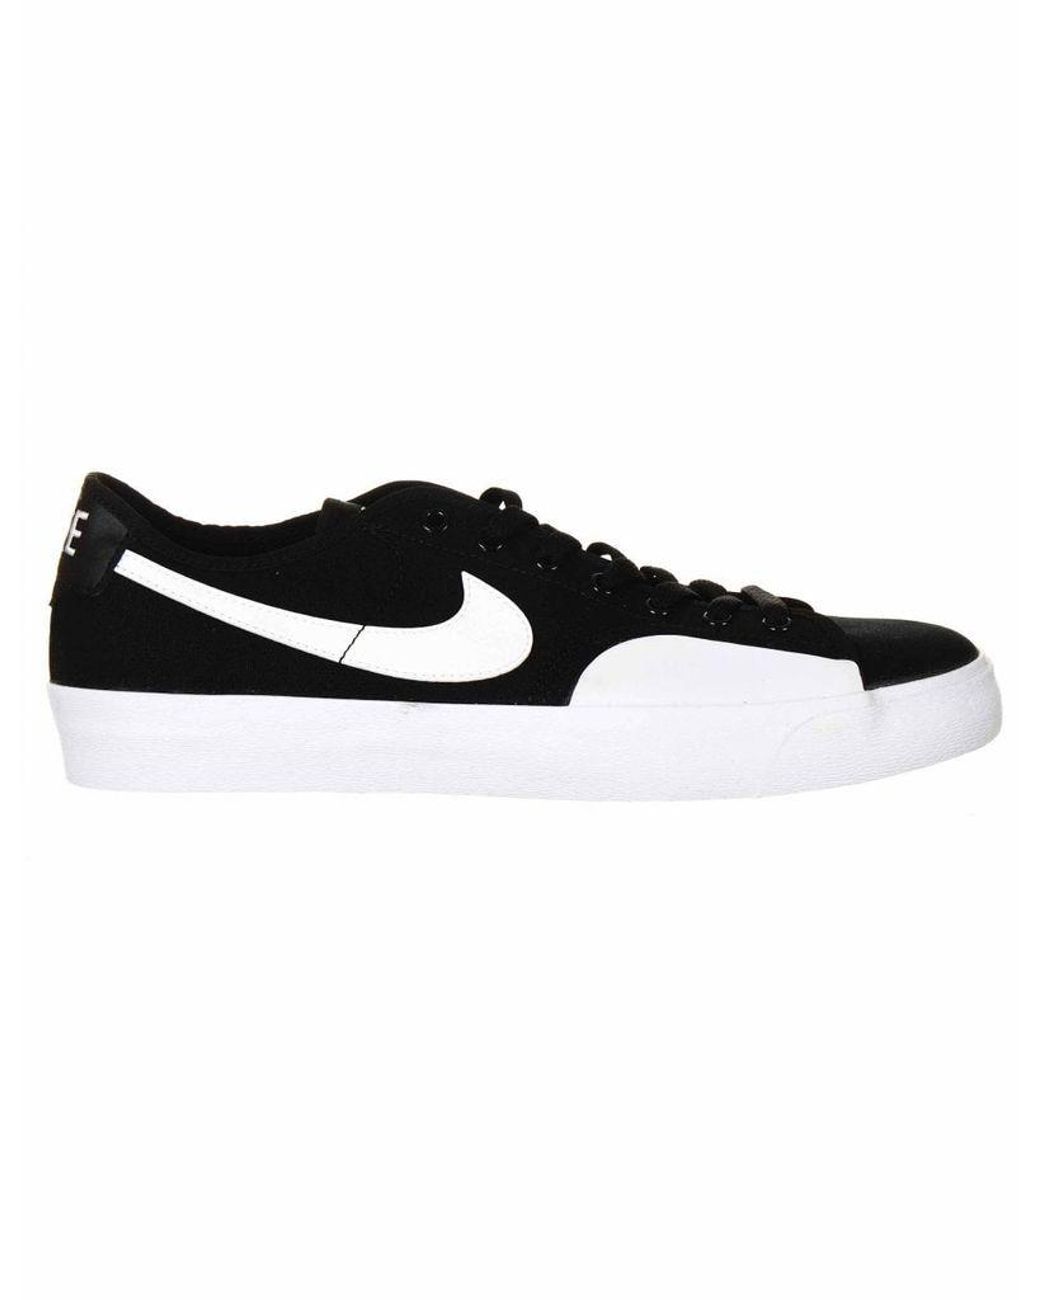 Nike Sb Blazer Court Shoes - /white Uk 8, in Black for Men - Lyst